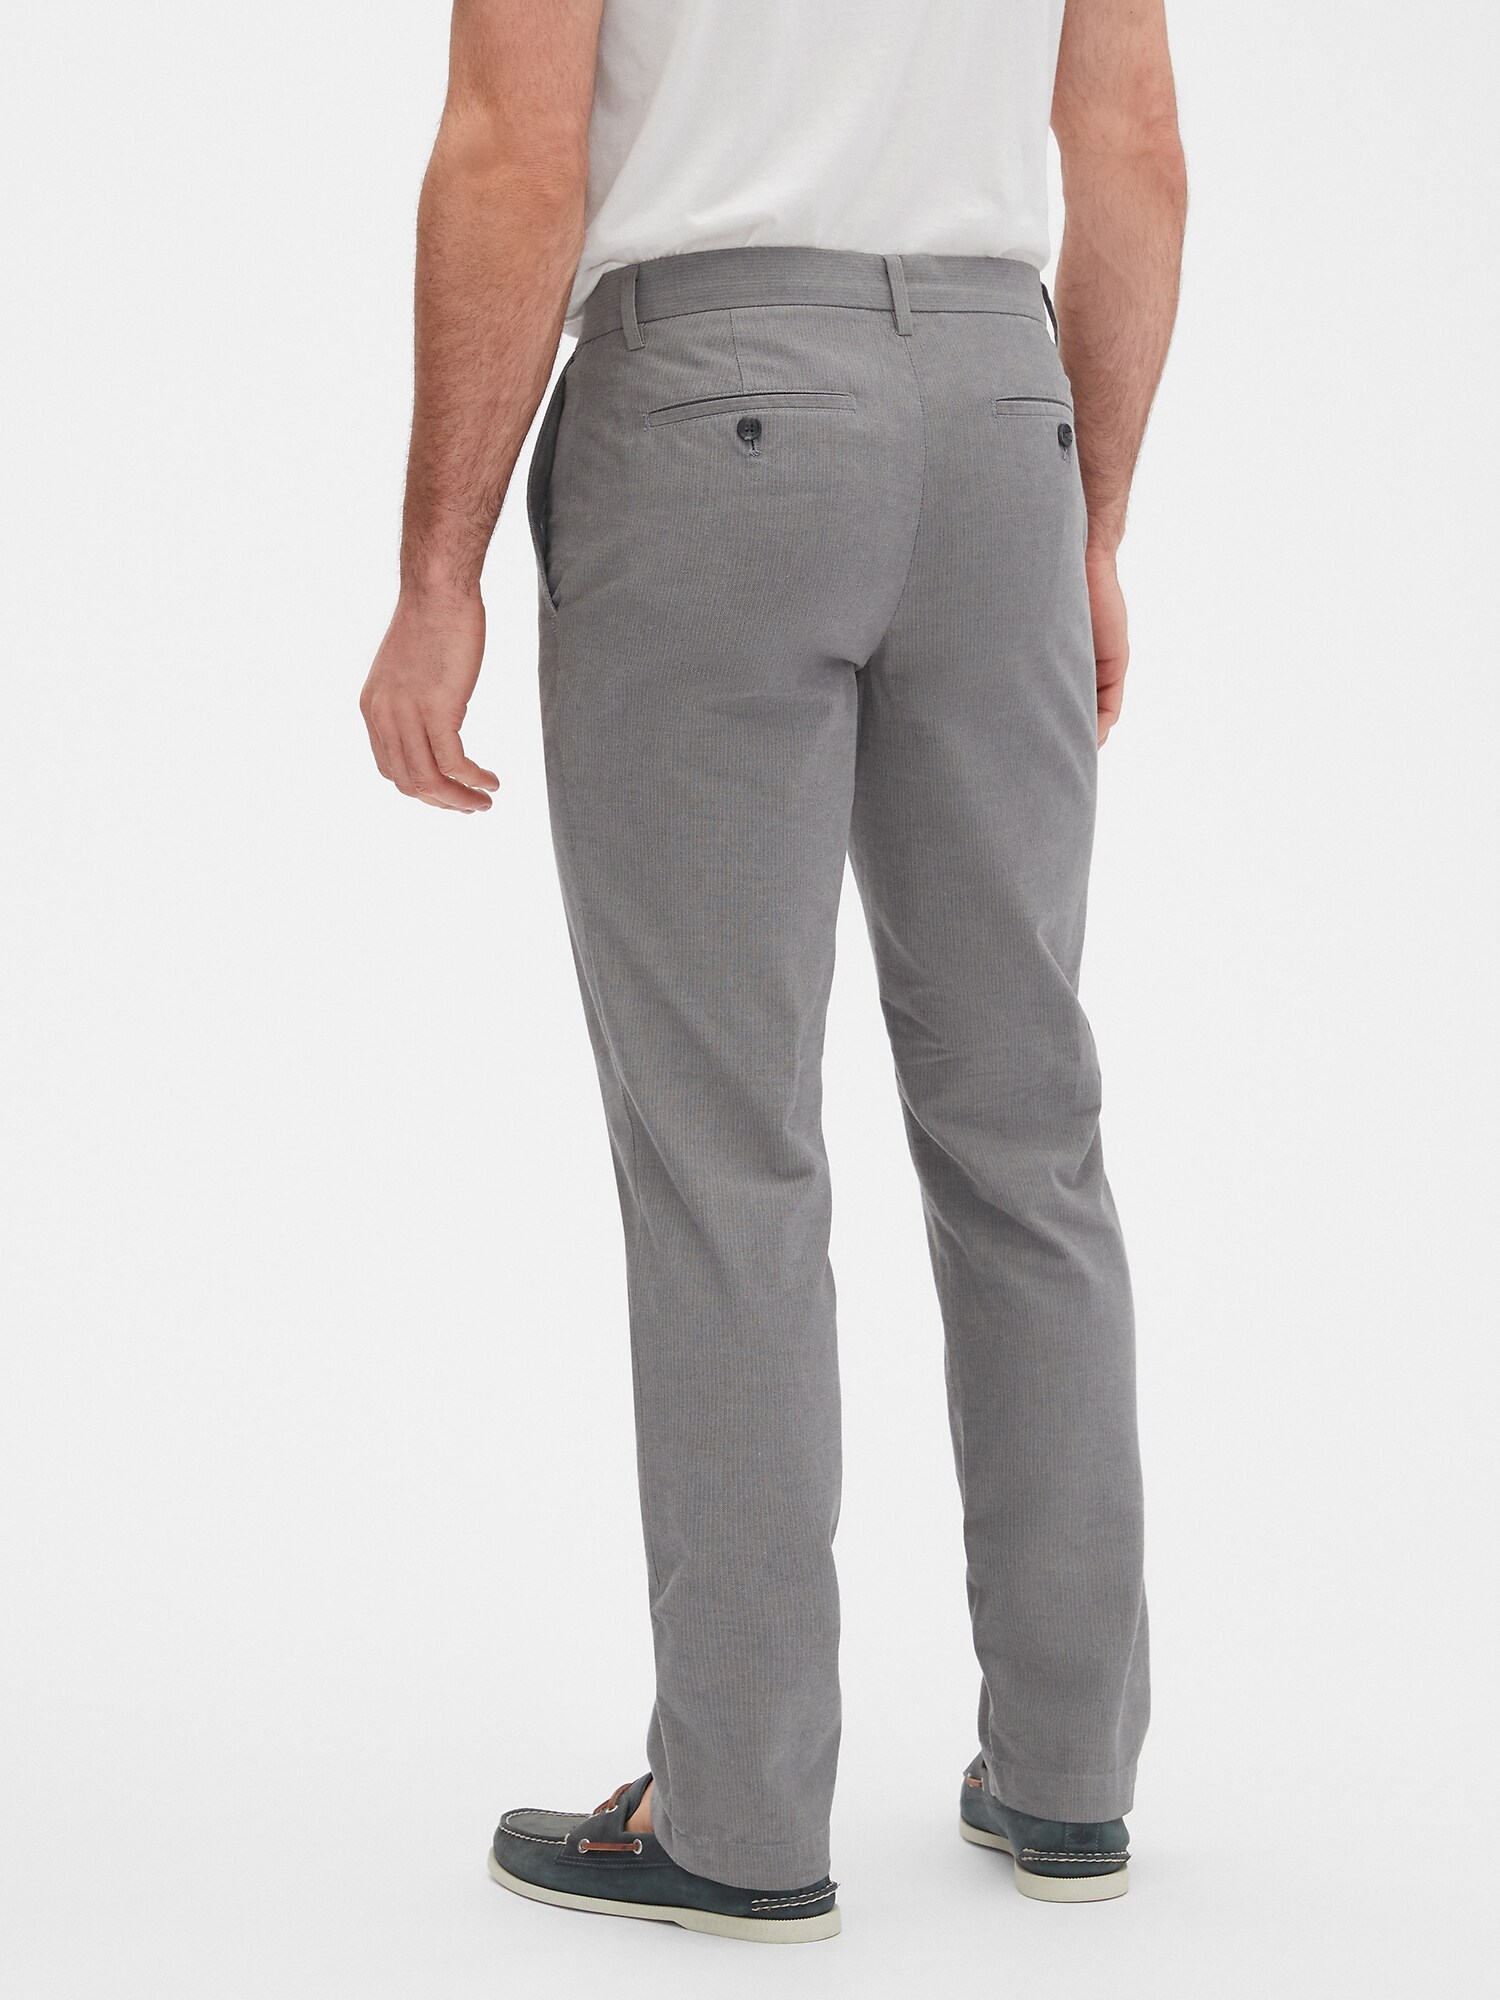 Aiden Slim-Fit Grey Herringbone Pant | Banana Republic Factory